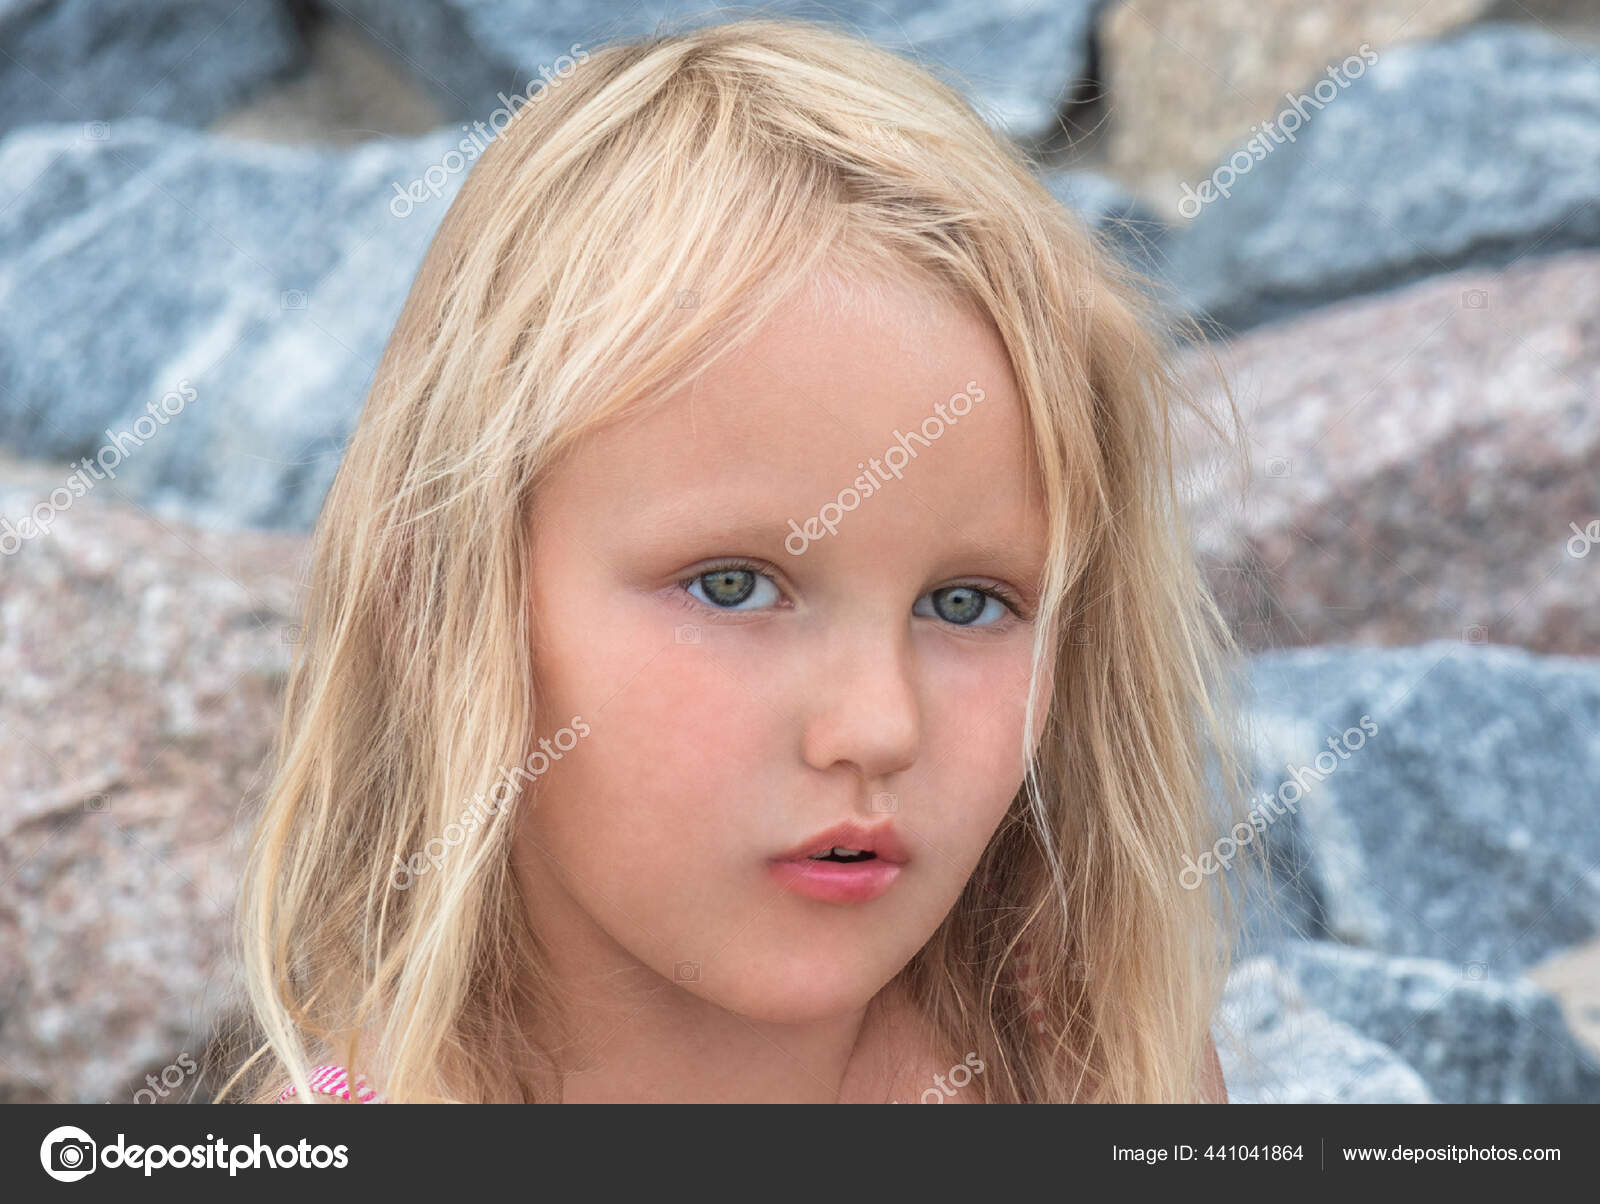 Retrato Da Menina Da Criança De 5 Anos Imagem de Stock - Imagem de